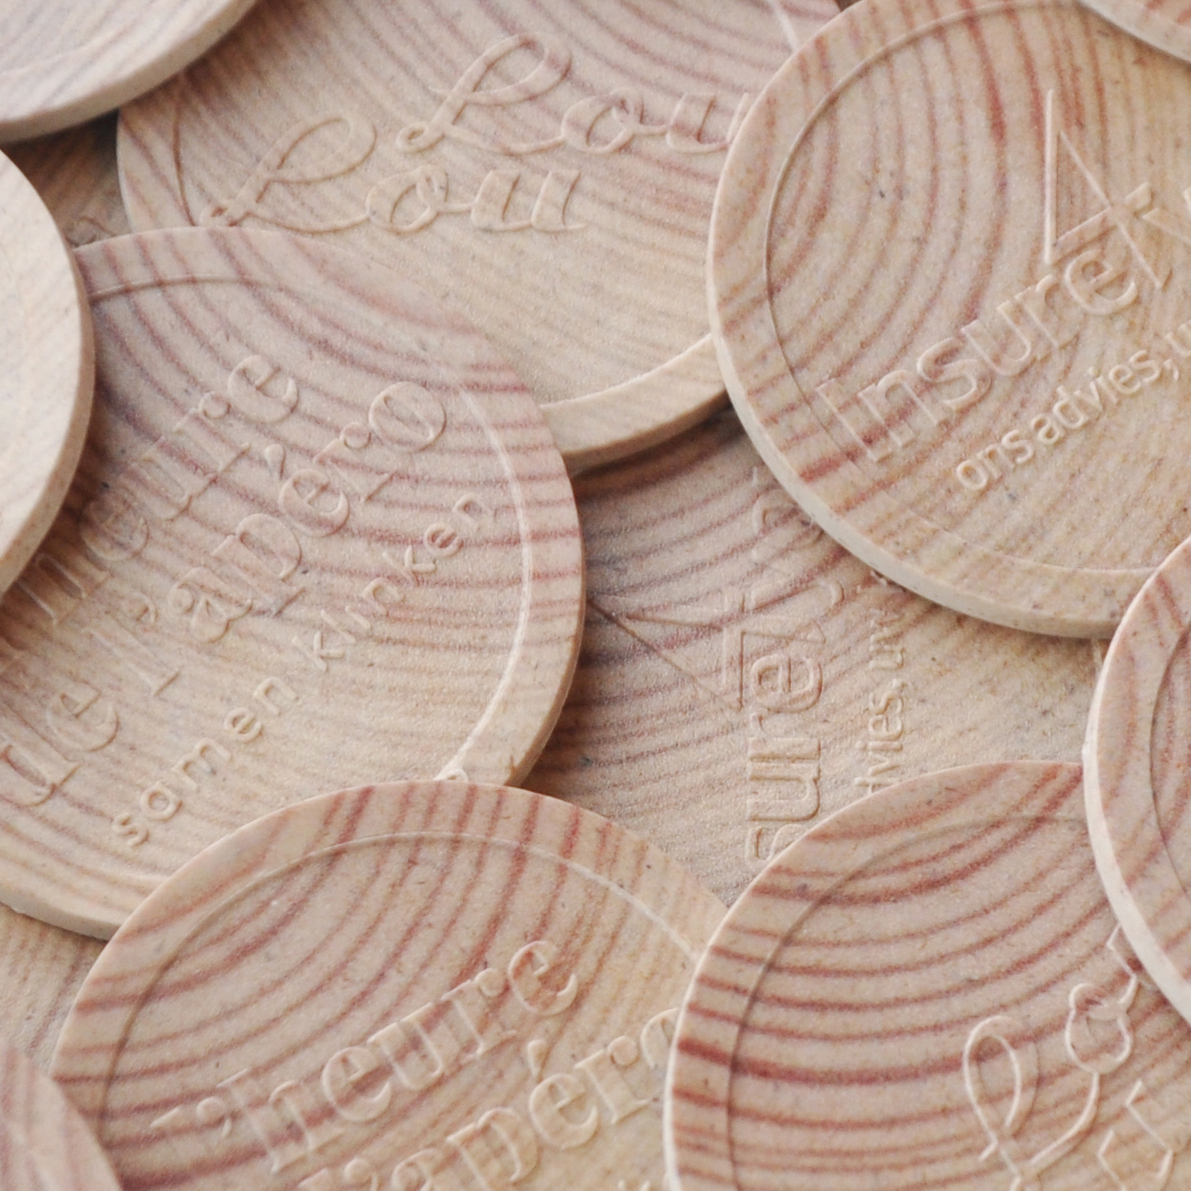 Wooden tokens